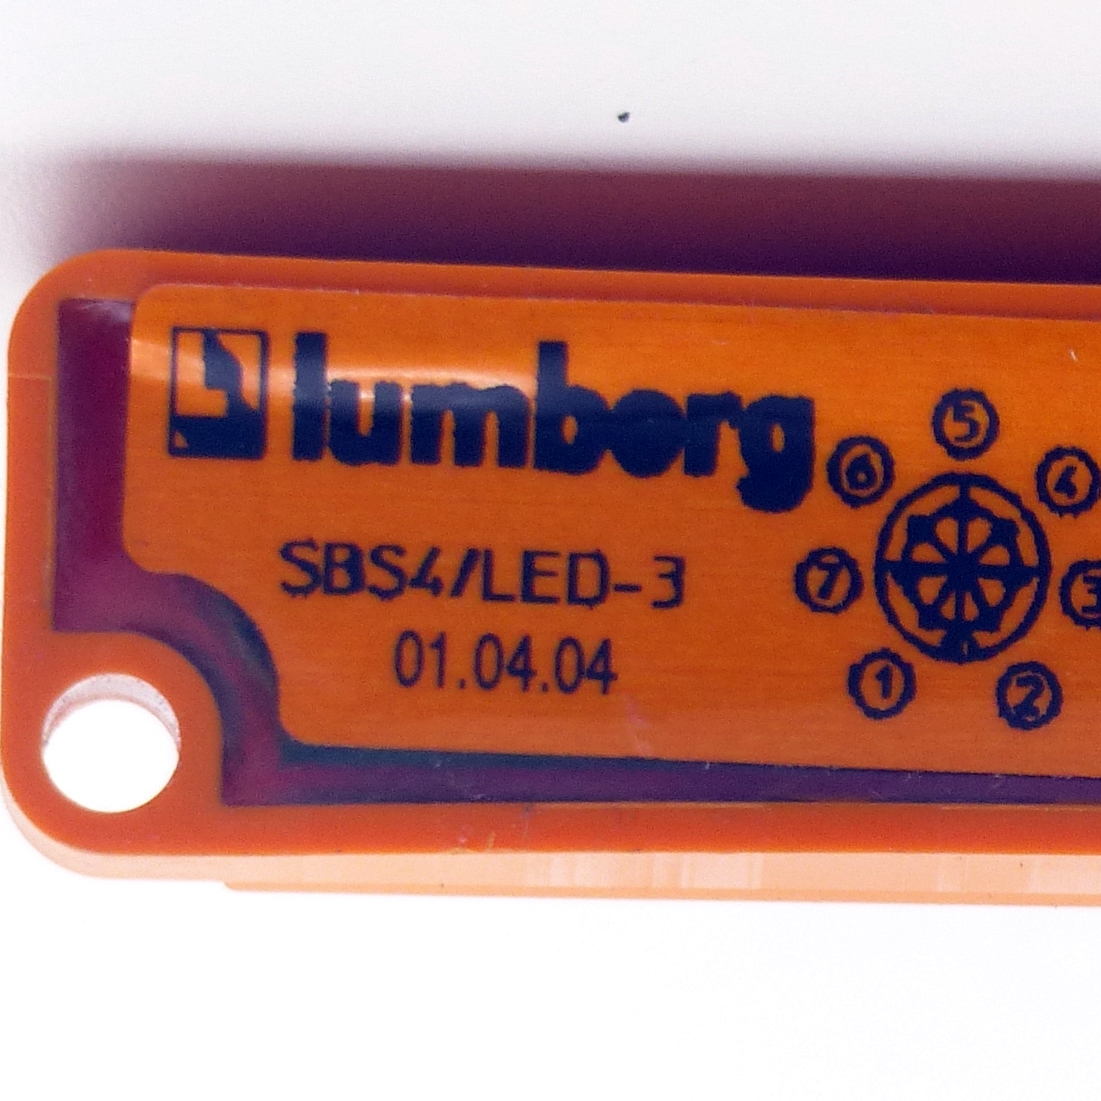 2 Stück SBS Miniatur-Sensor-Verteiler SBS4/LED-3 